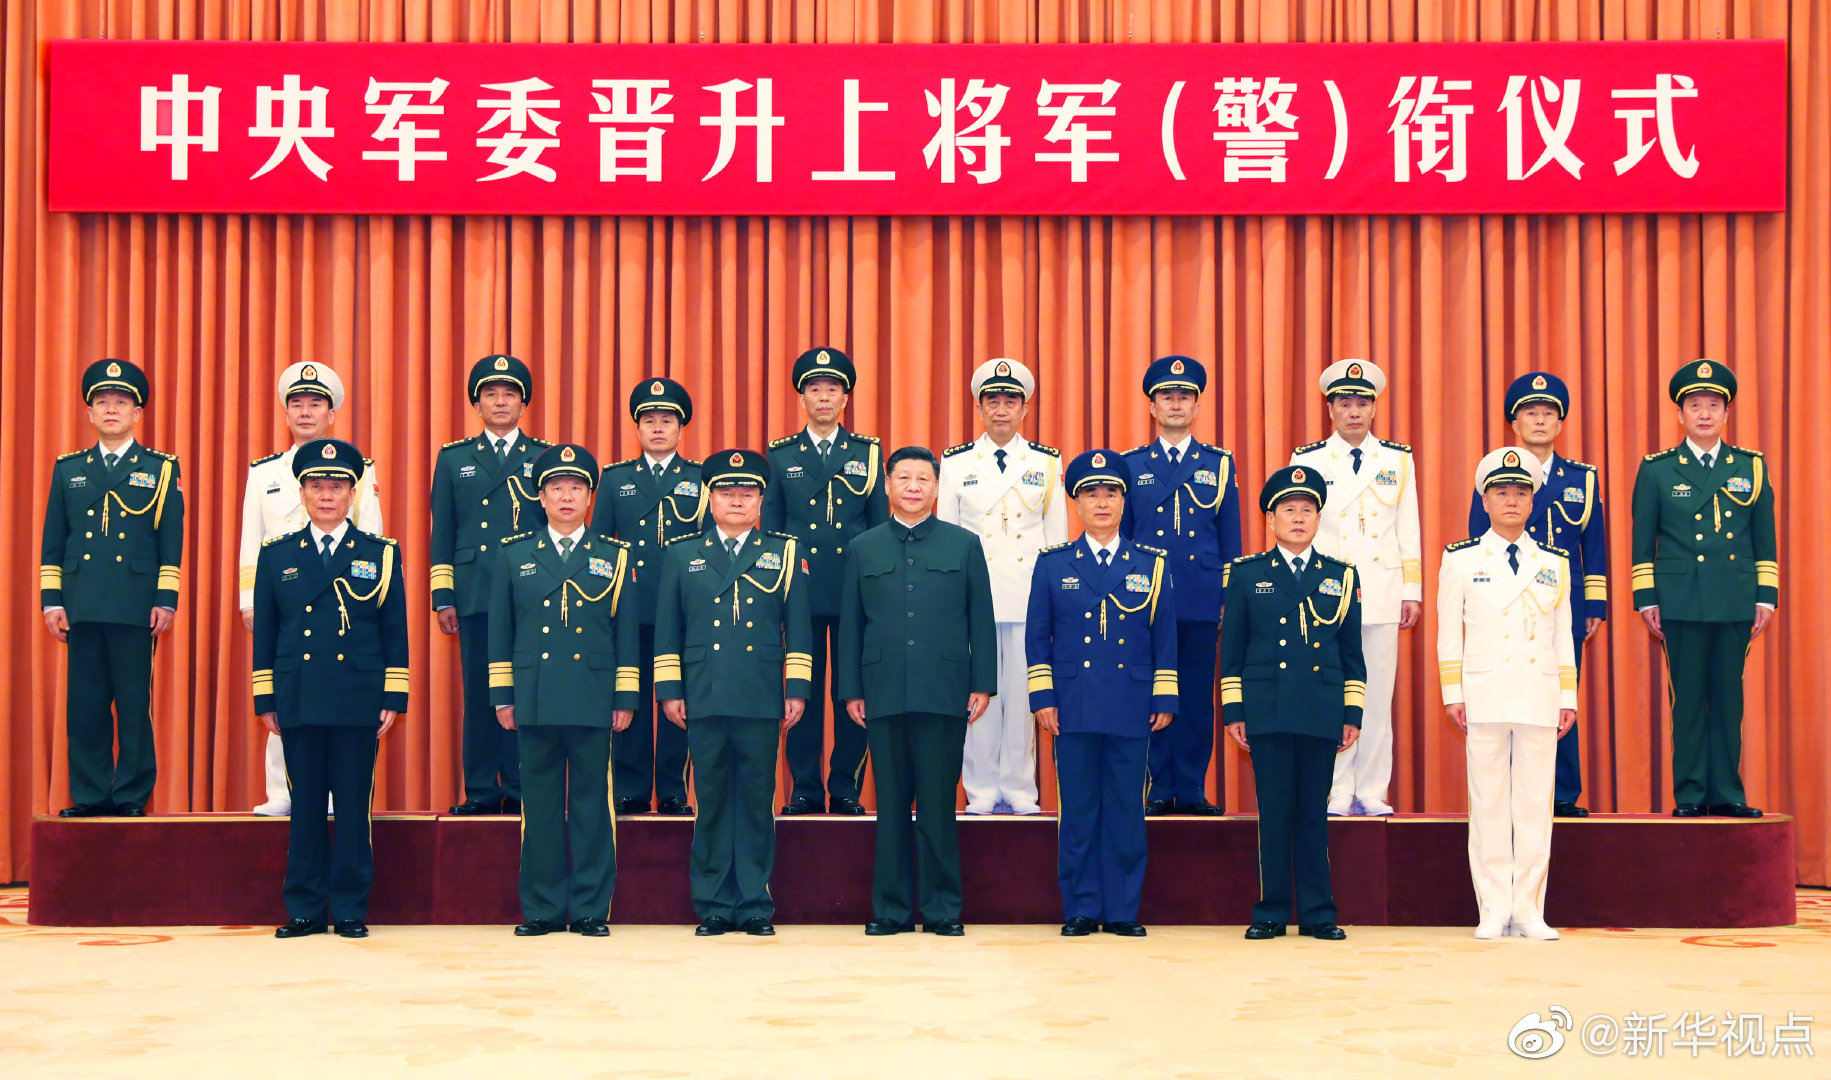 这次晋升上将军衔警衔的军官警官是:军委装备发展部部长李尚福,南部